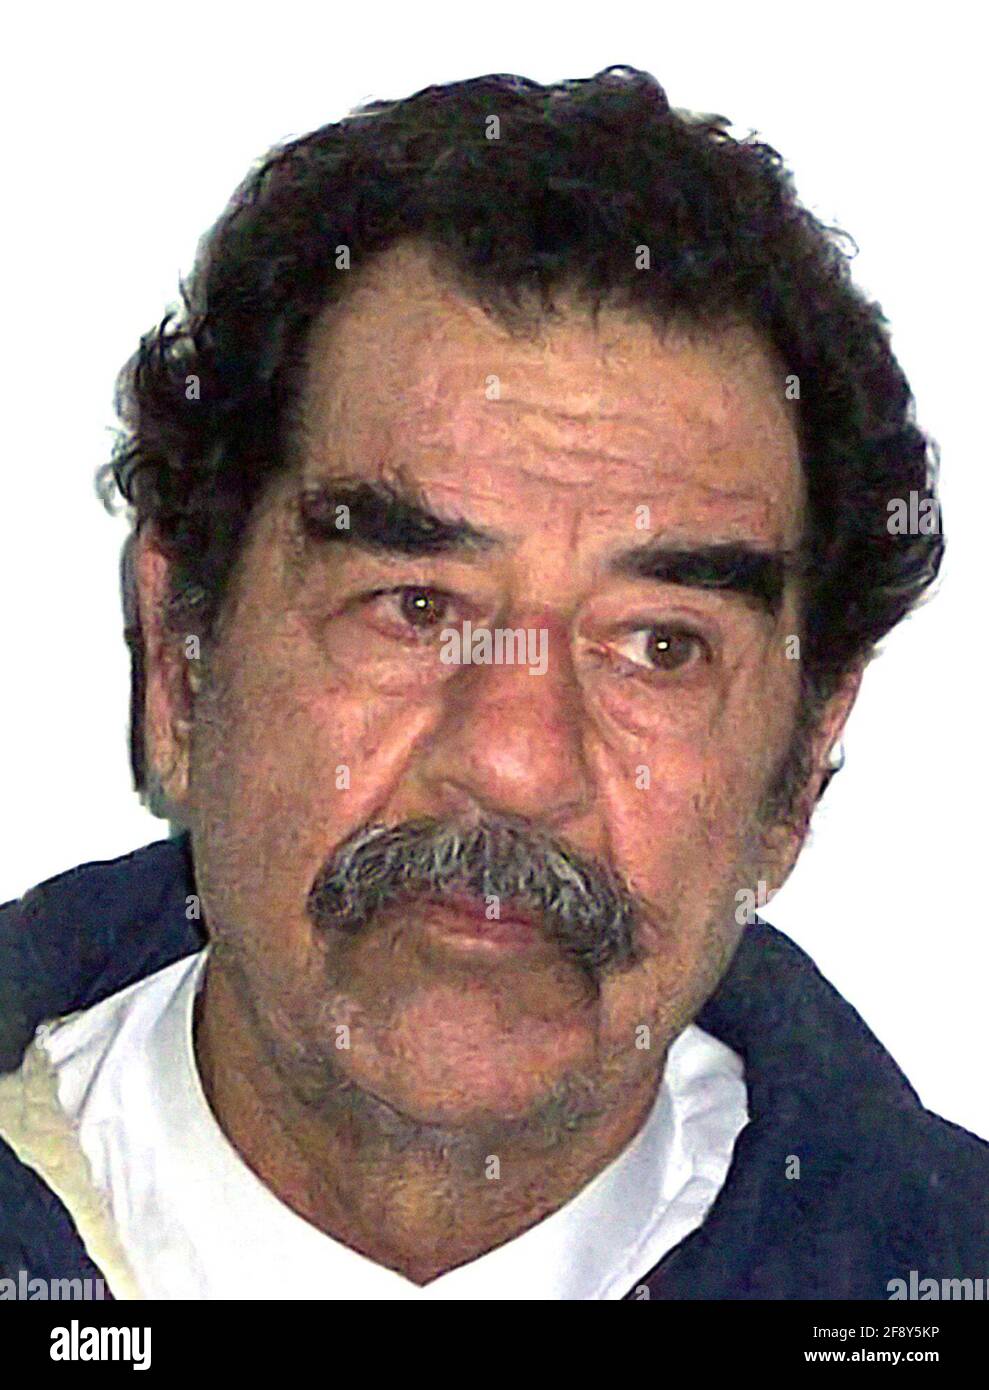 Saddam Hussein. Ritratto dell'ex presidente dell'Iraq, Saddam Hussein Abd al-Majid al-Tikriti 1937-2006). Fotografia dell'esercito AMERICANO scattata poco dopo la sua cattura a Tikrit, in Iraq, nel 2003. Foto Stock